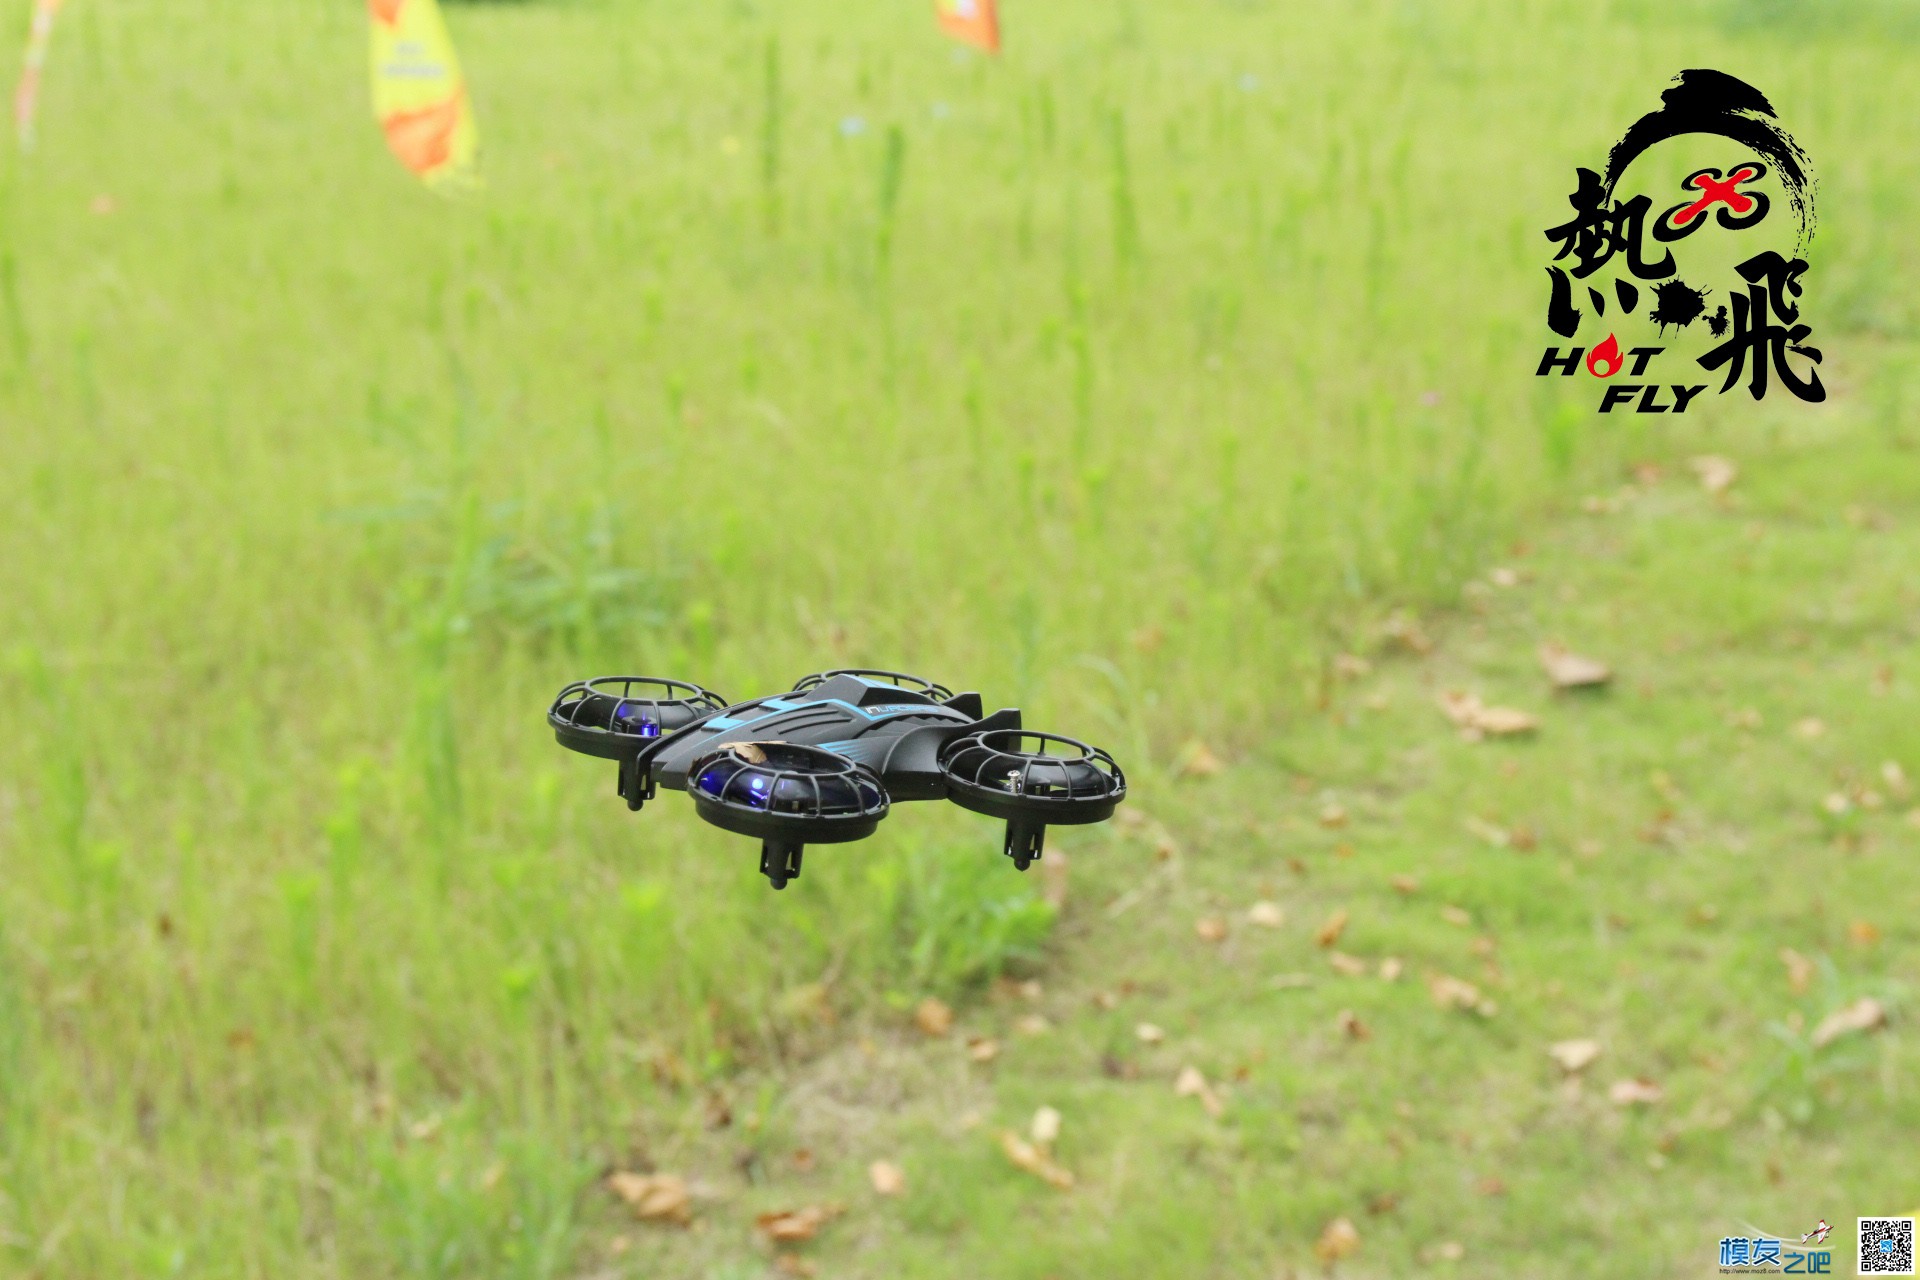 热飞视频+图片|7.9无人机总动员现场曝光各种最新机型 无人机 作者:杭州大碗 1651 